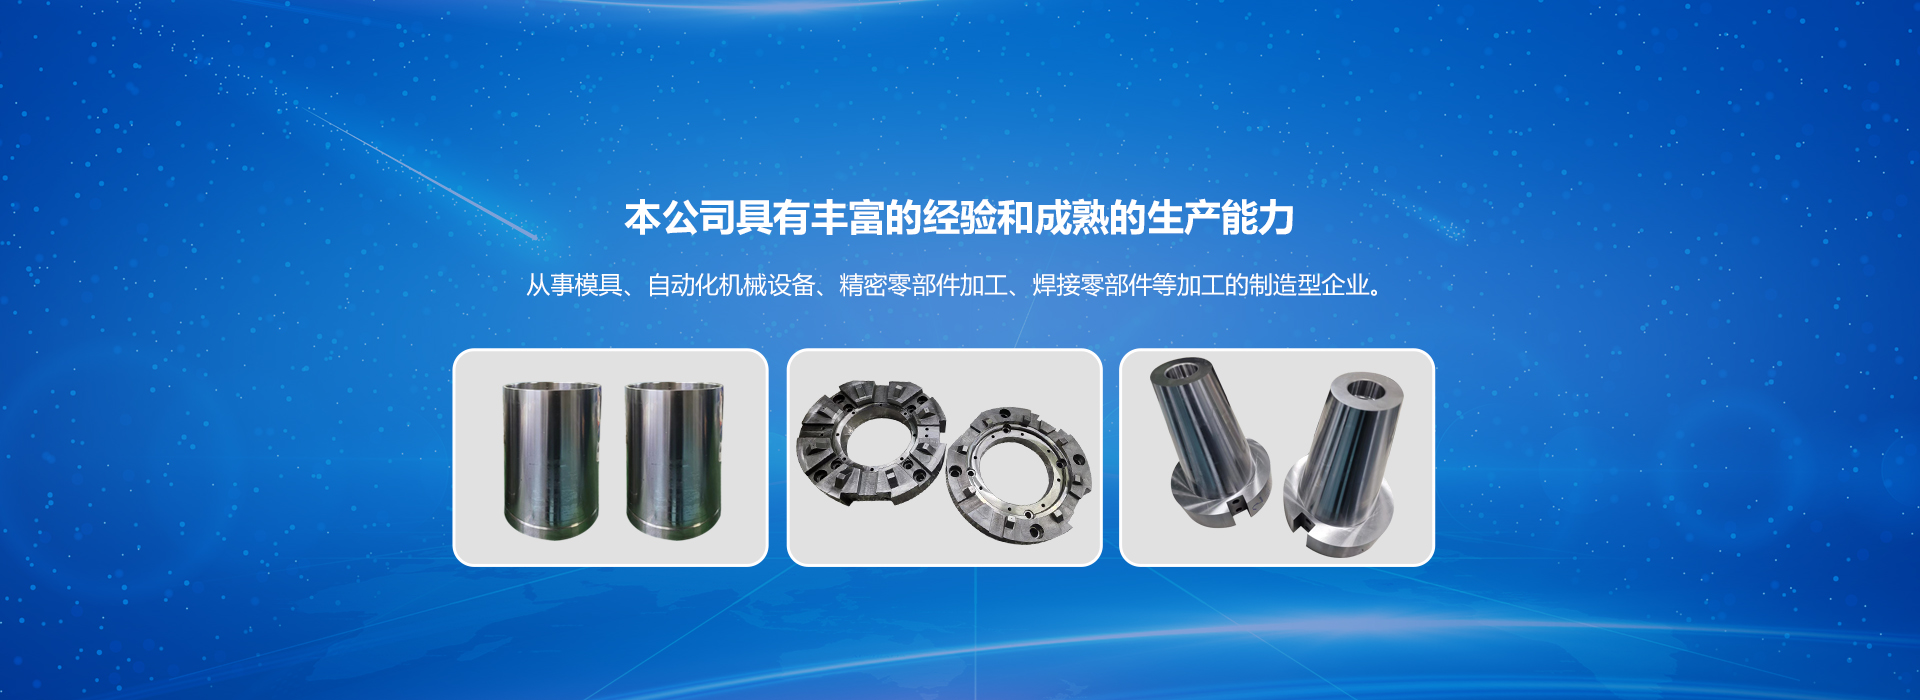 青森公司主營日本零部件、焊接零部件、非標零部件 組裝設備零部件、精密零部件等。